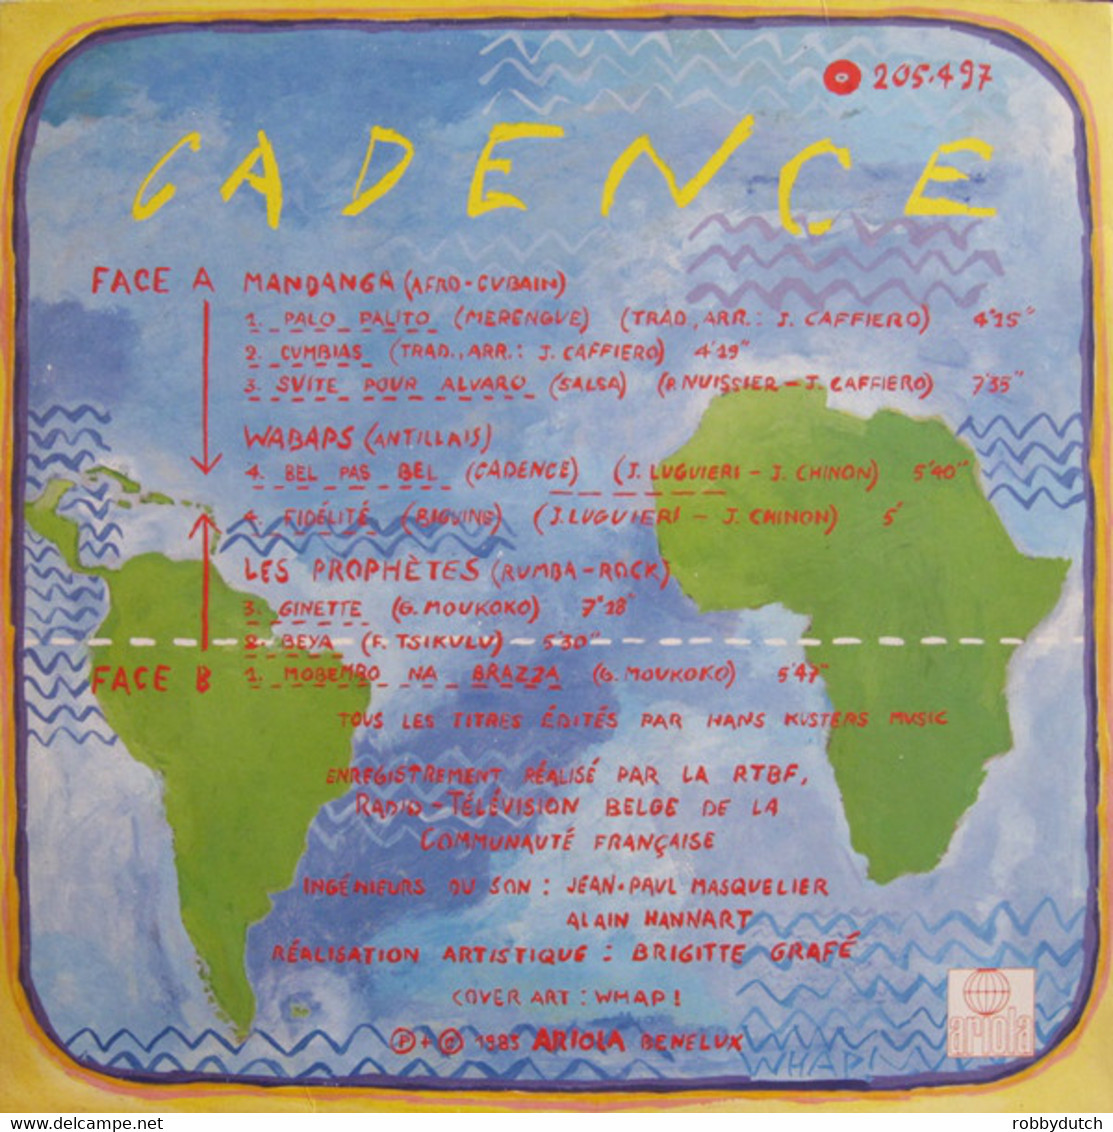 * LP * CADENCE - VARIOUS ARTISTS (Holland 1983 EX!!) - Musiques Du Monde